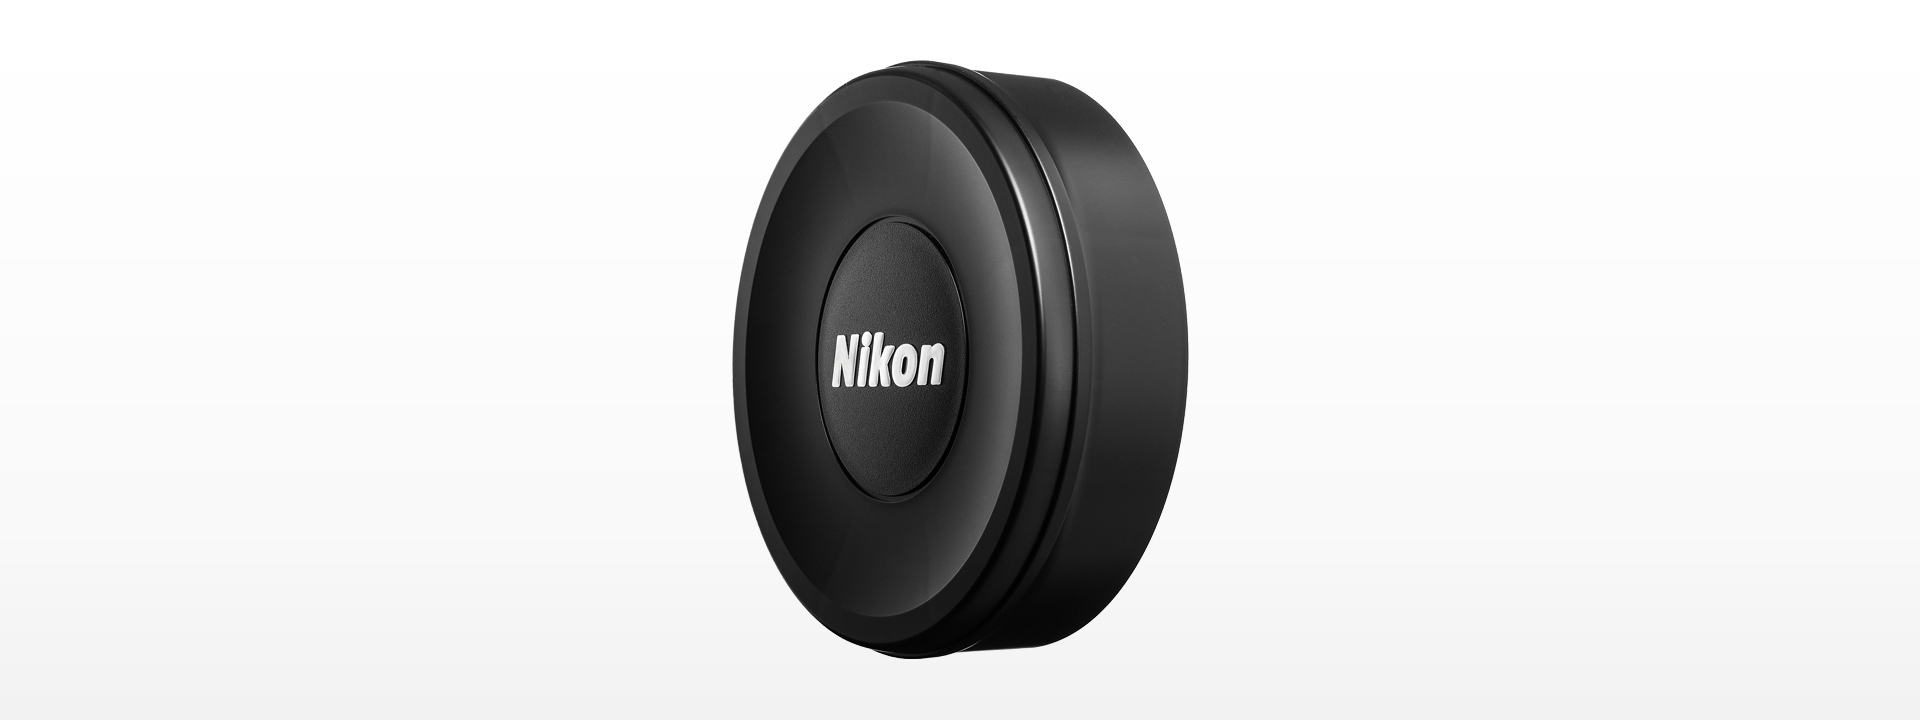 Nikon ニコン AF-S NIKKOR 14-24mm 2.8G N レンズ